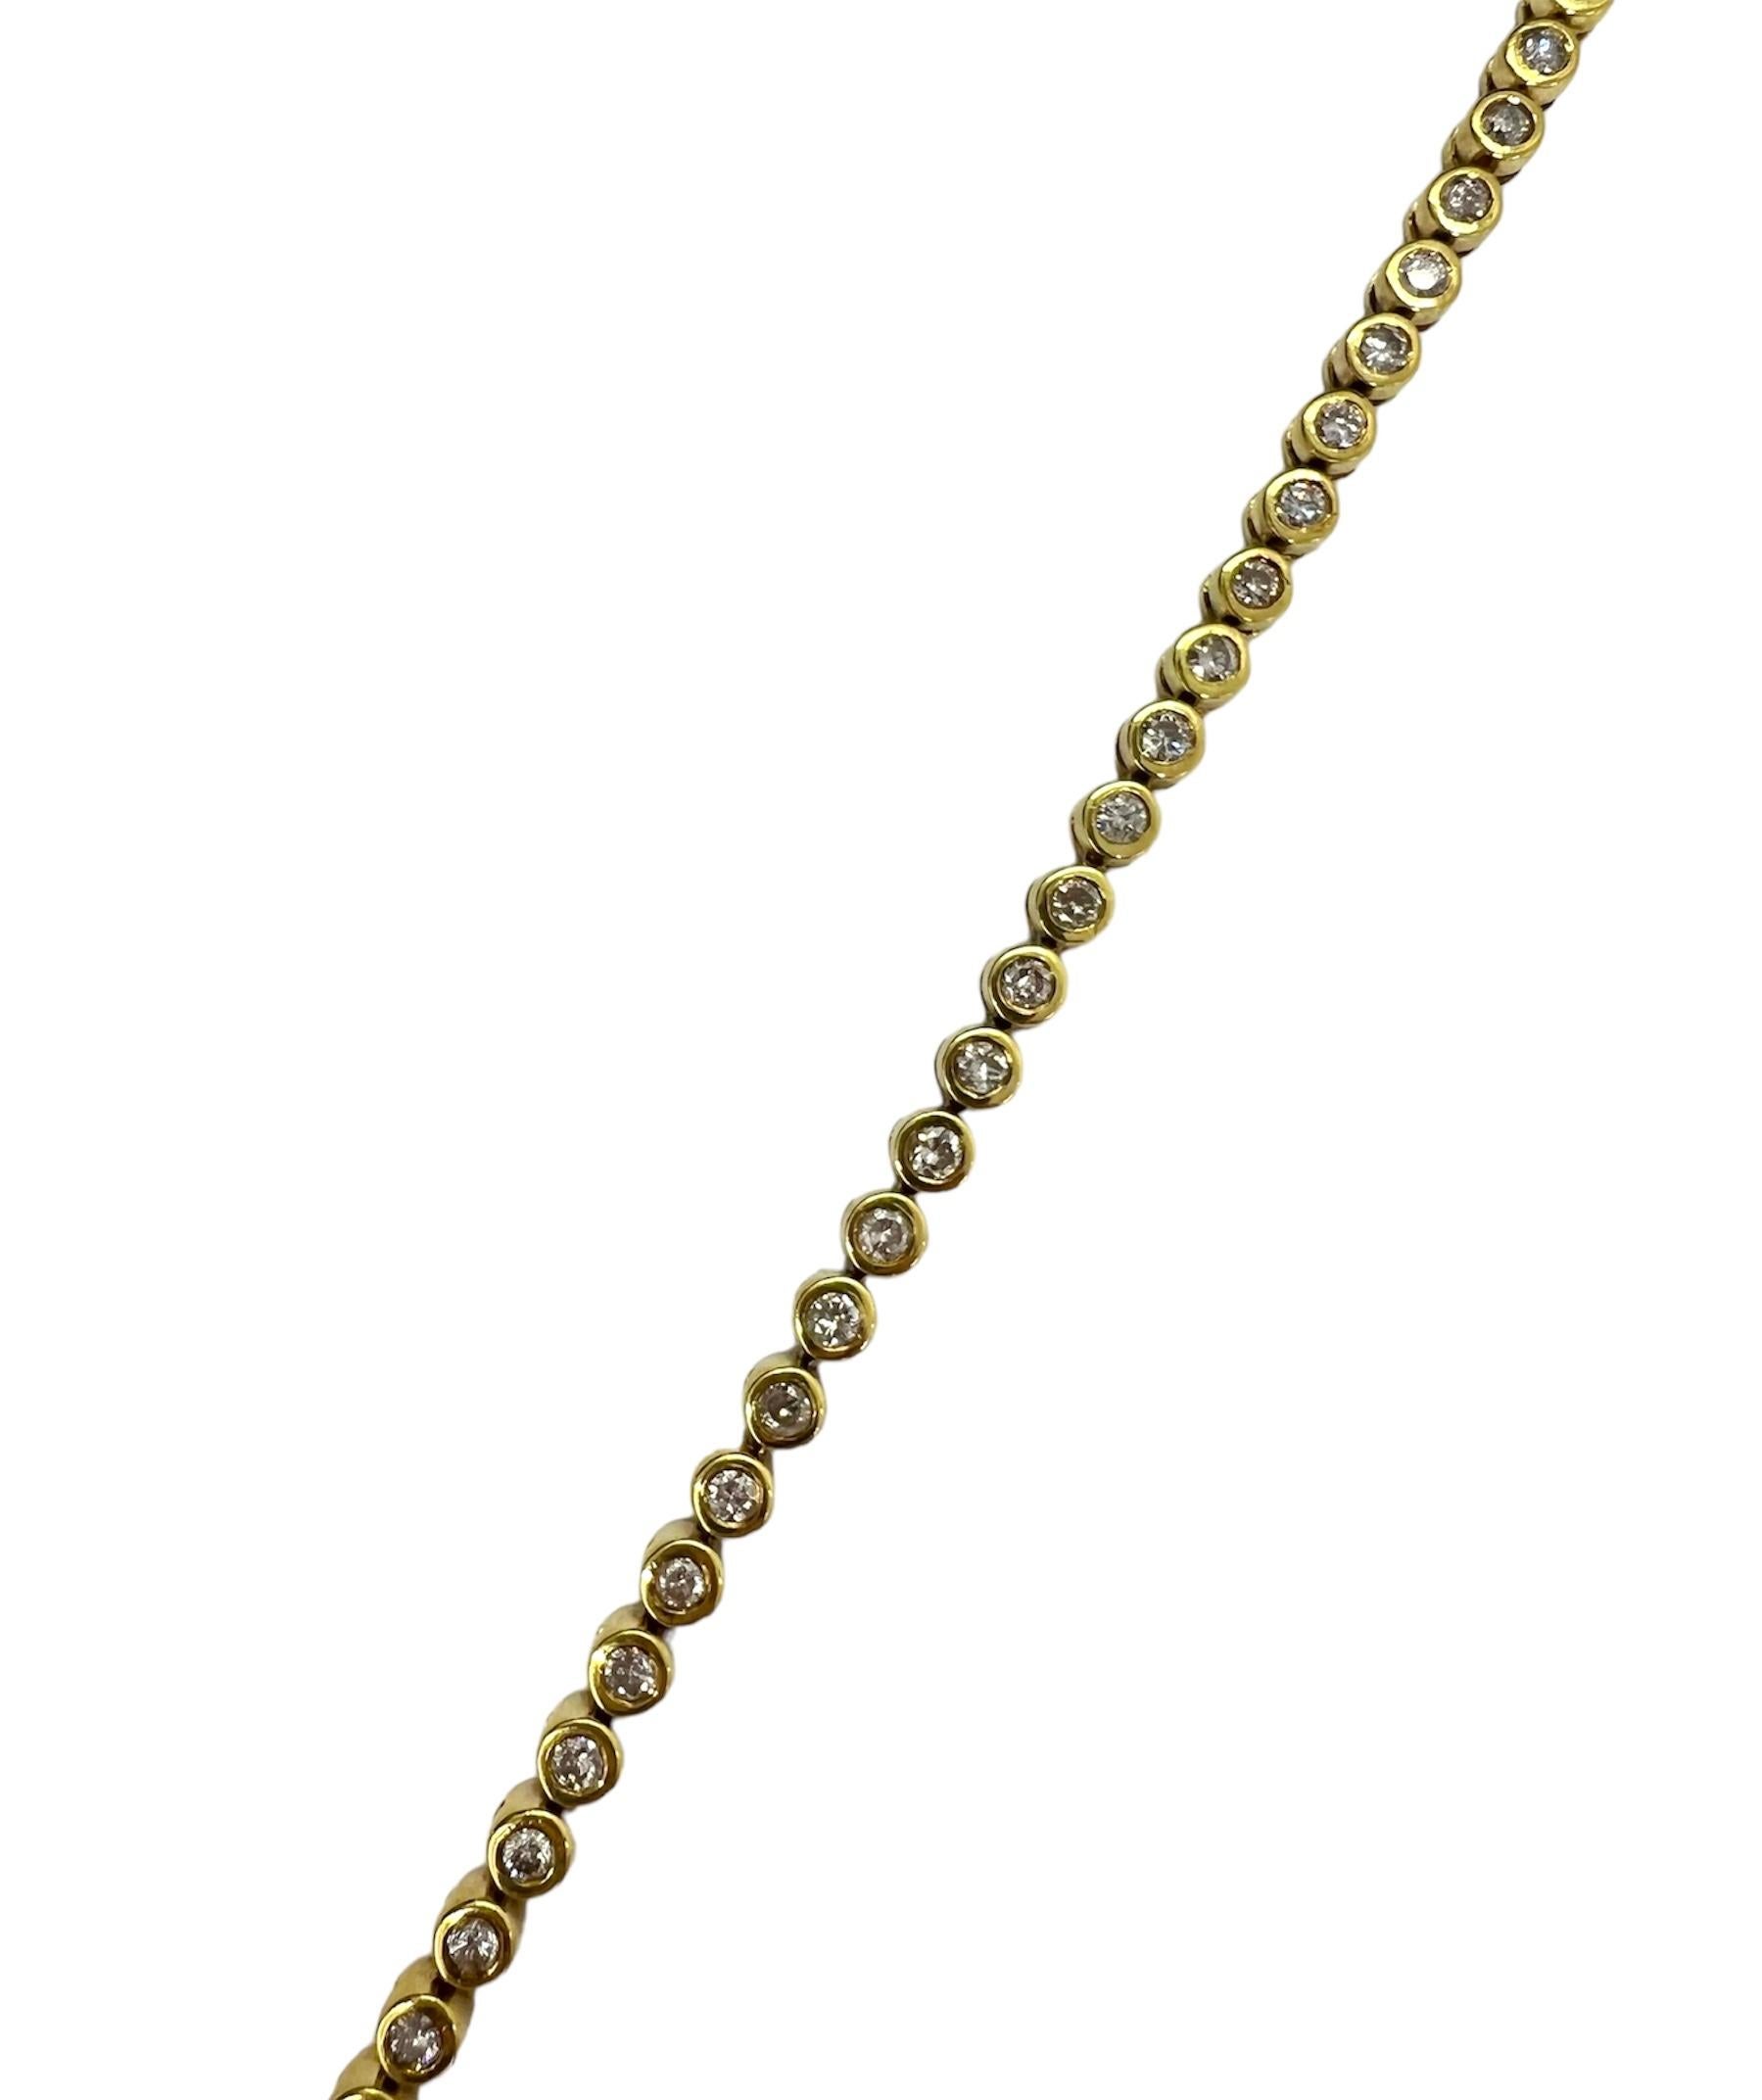 Gelbgoldarmband mit 4,10 Karat Diamanten.

Sophia D von Joseph Dardashti LTD ist seit 35 Jahren weltweit bekannt und lässt sich vom klassischen Art-Déco-Design inspirieren, das mit modernen Fertigungstechniken verschmilzt.
